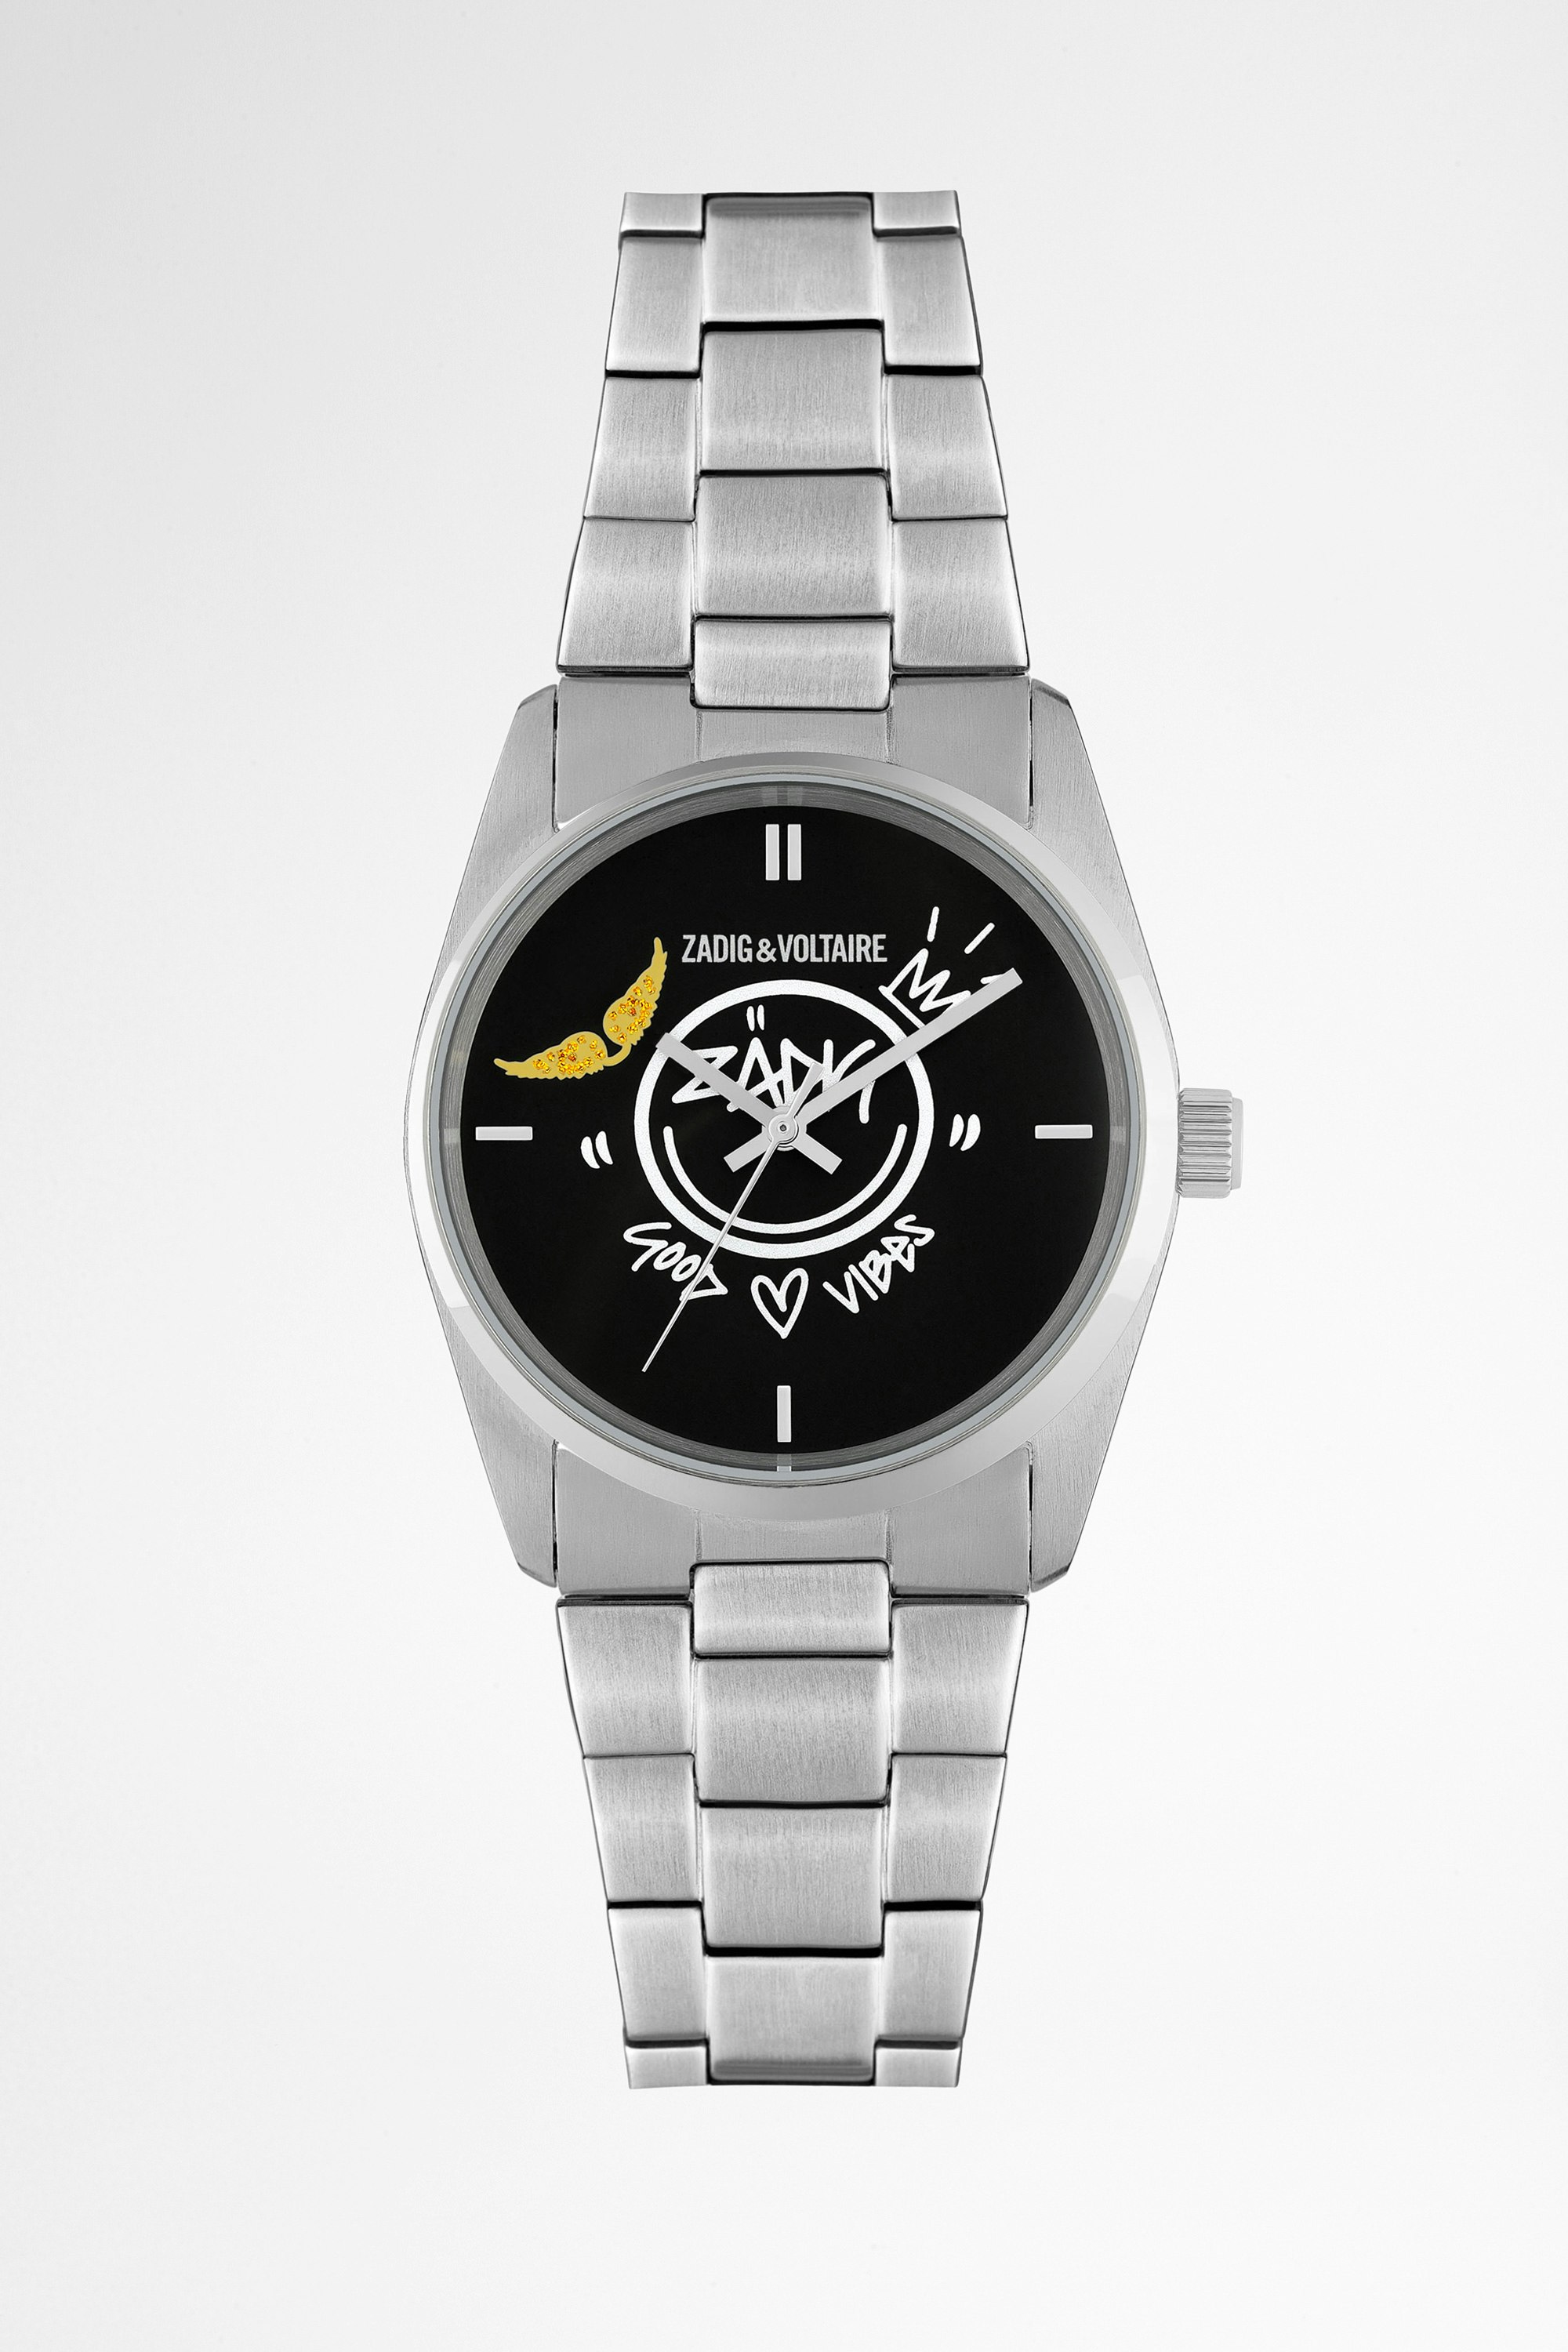 Fusion Jormi Watch Women's stainless steel watch with Jormi street pattern